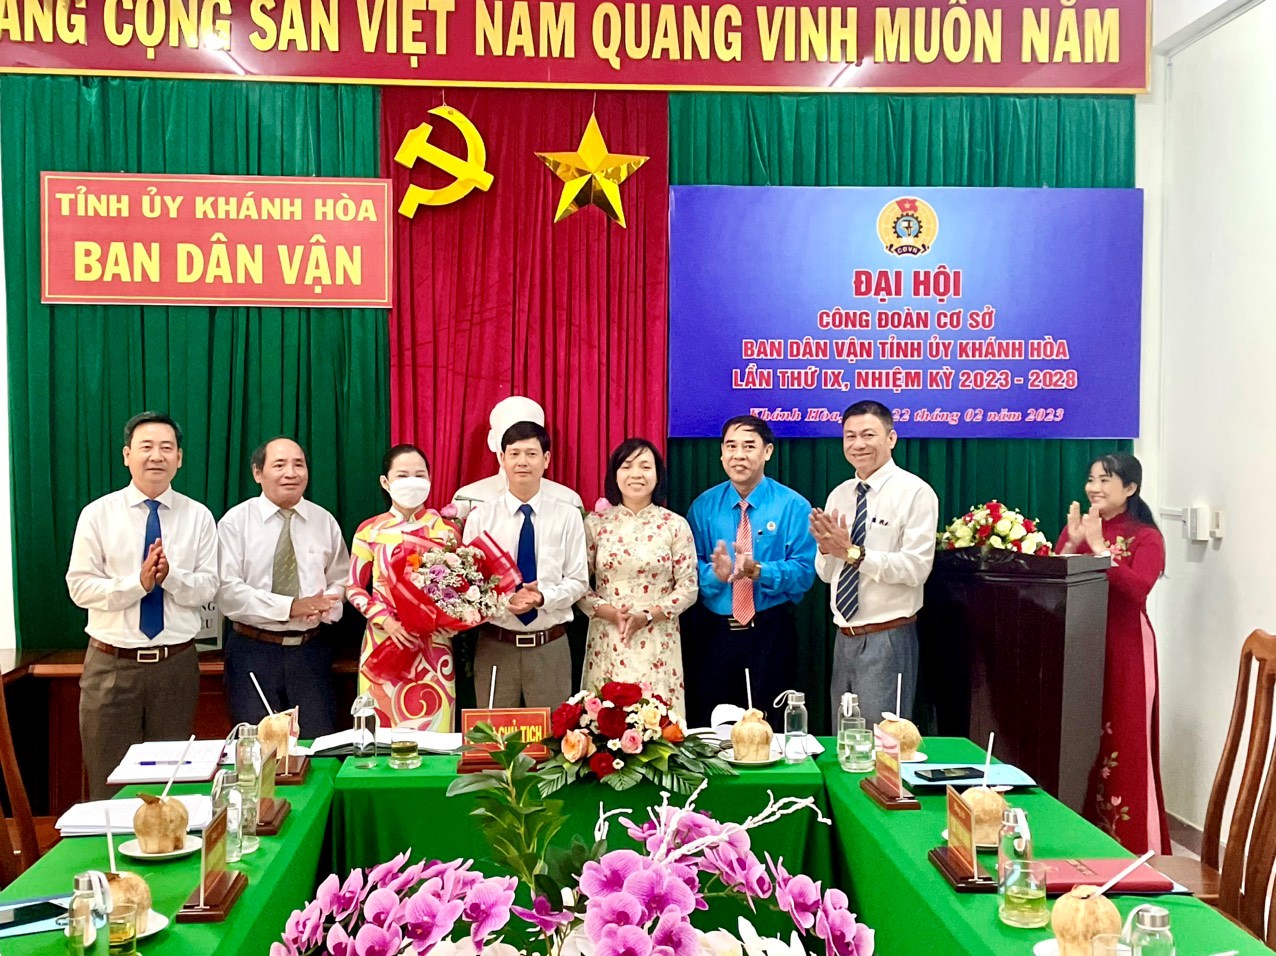 Đại hội Công đoàn cơ sở Ban Dân vận Tỉnh ủy Khánh Hòa